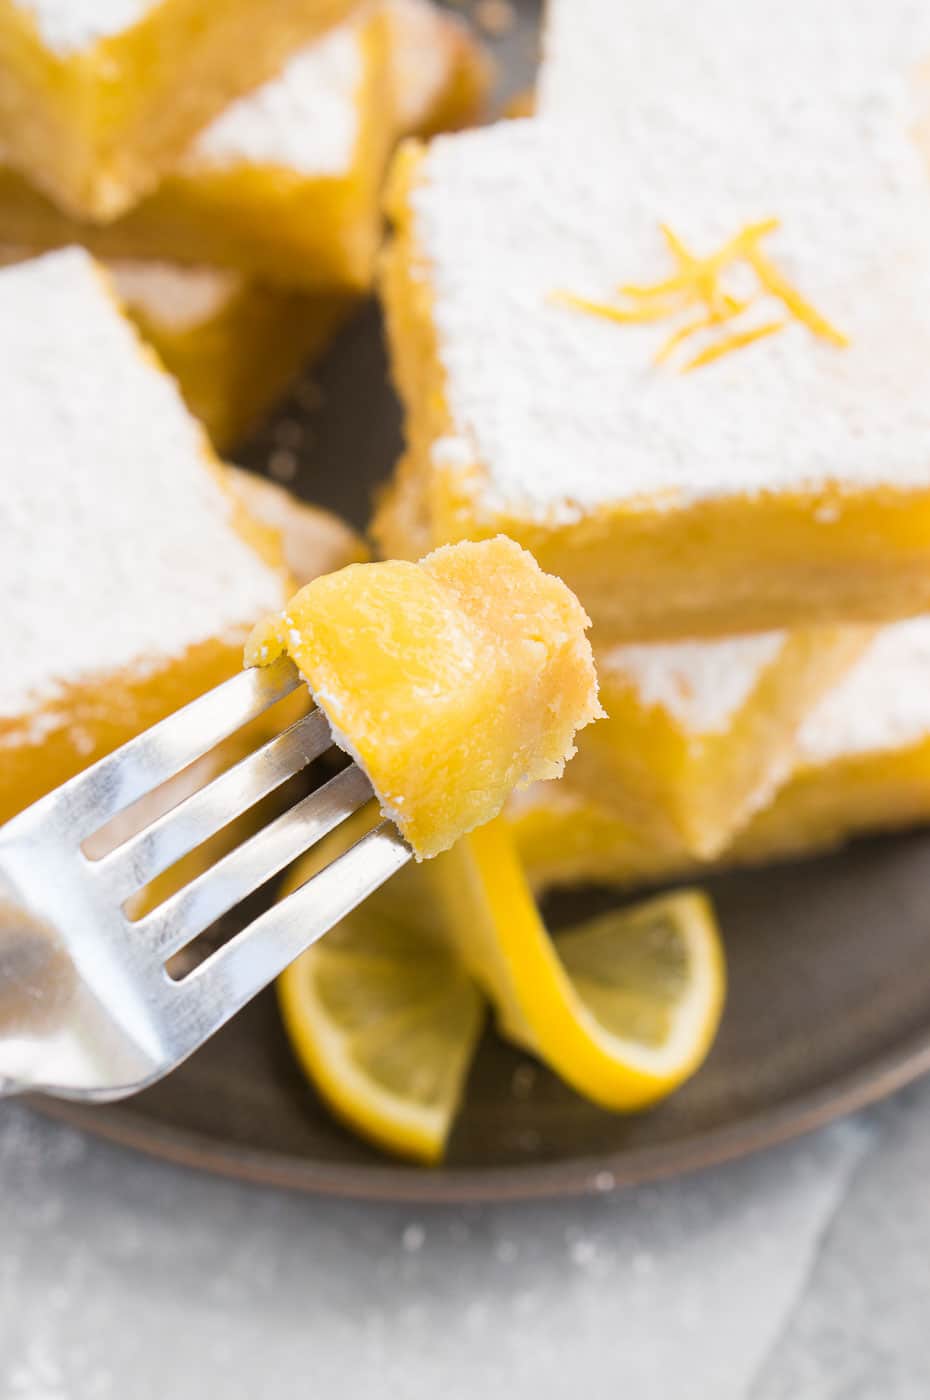 a bite of lemon dessert